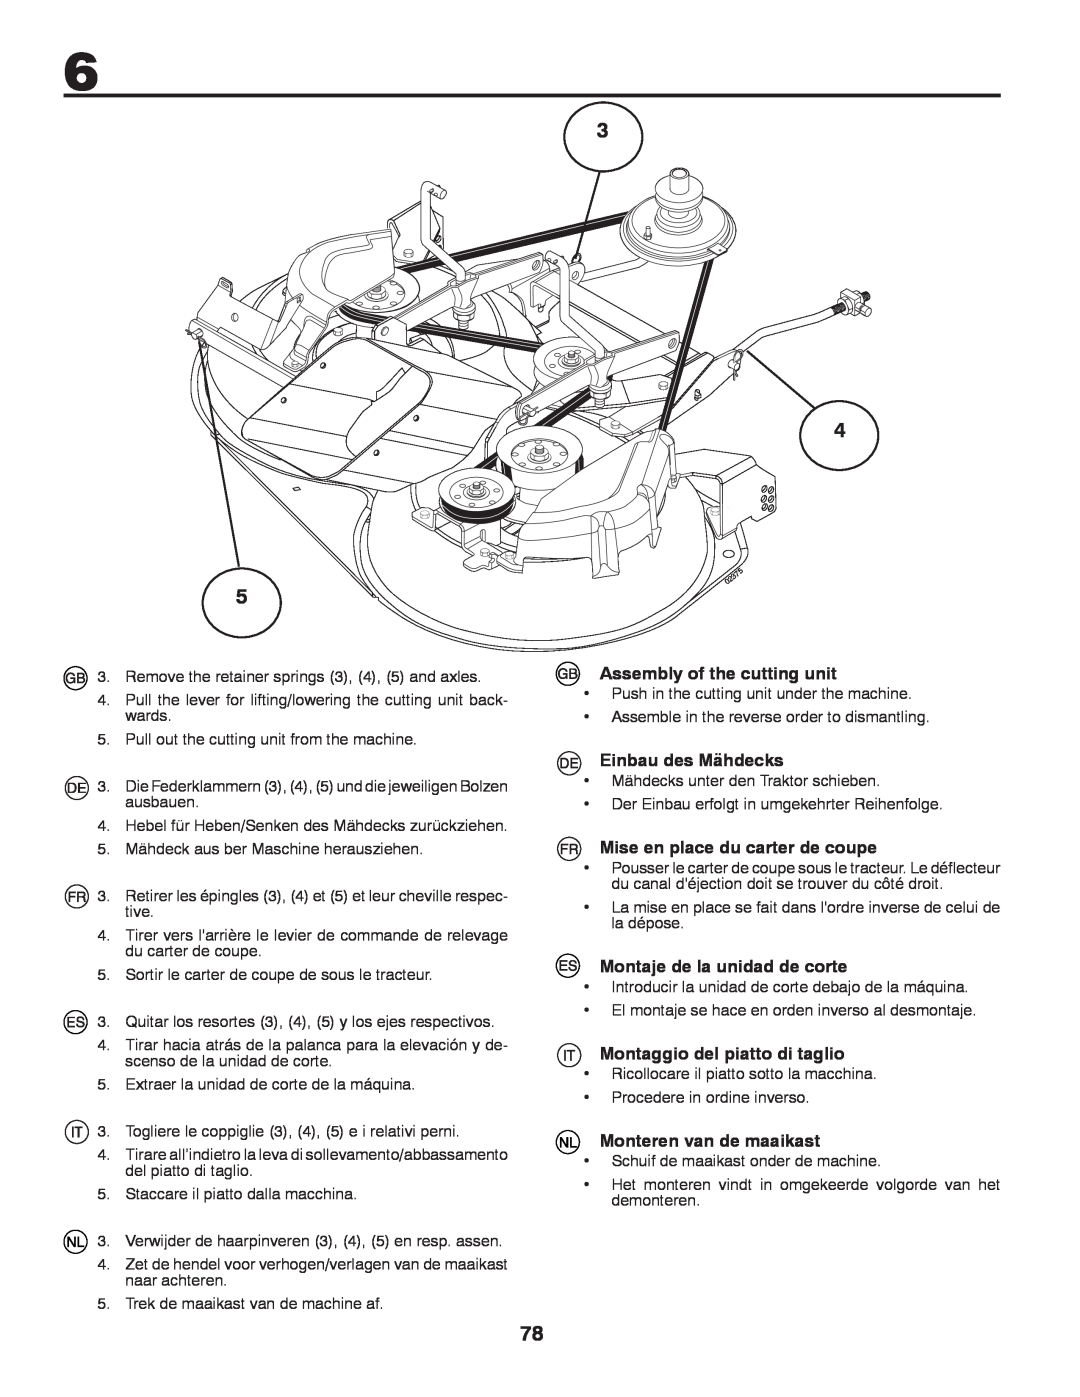 Husqvarna CTH140TWIN instruction manual Assembly of the cutting unit, Einbau des Mähdecks, Mise en place du carter de coupe 